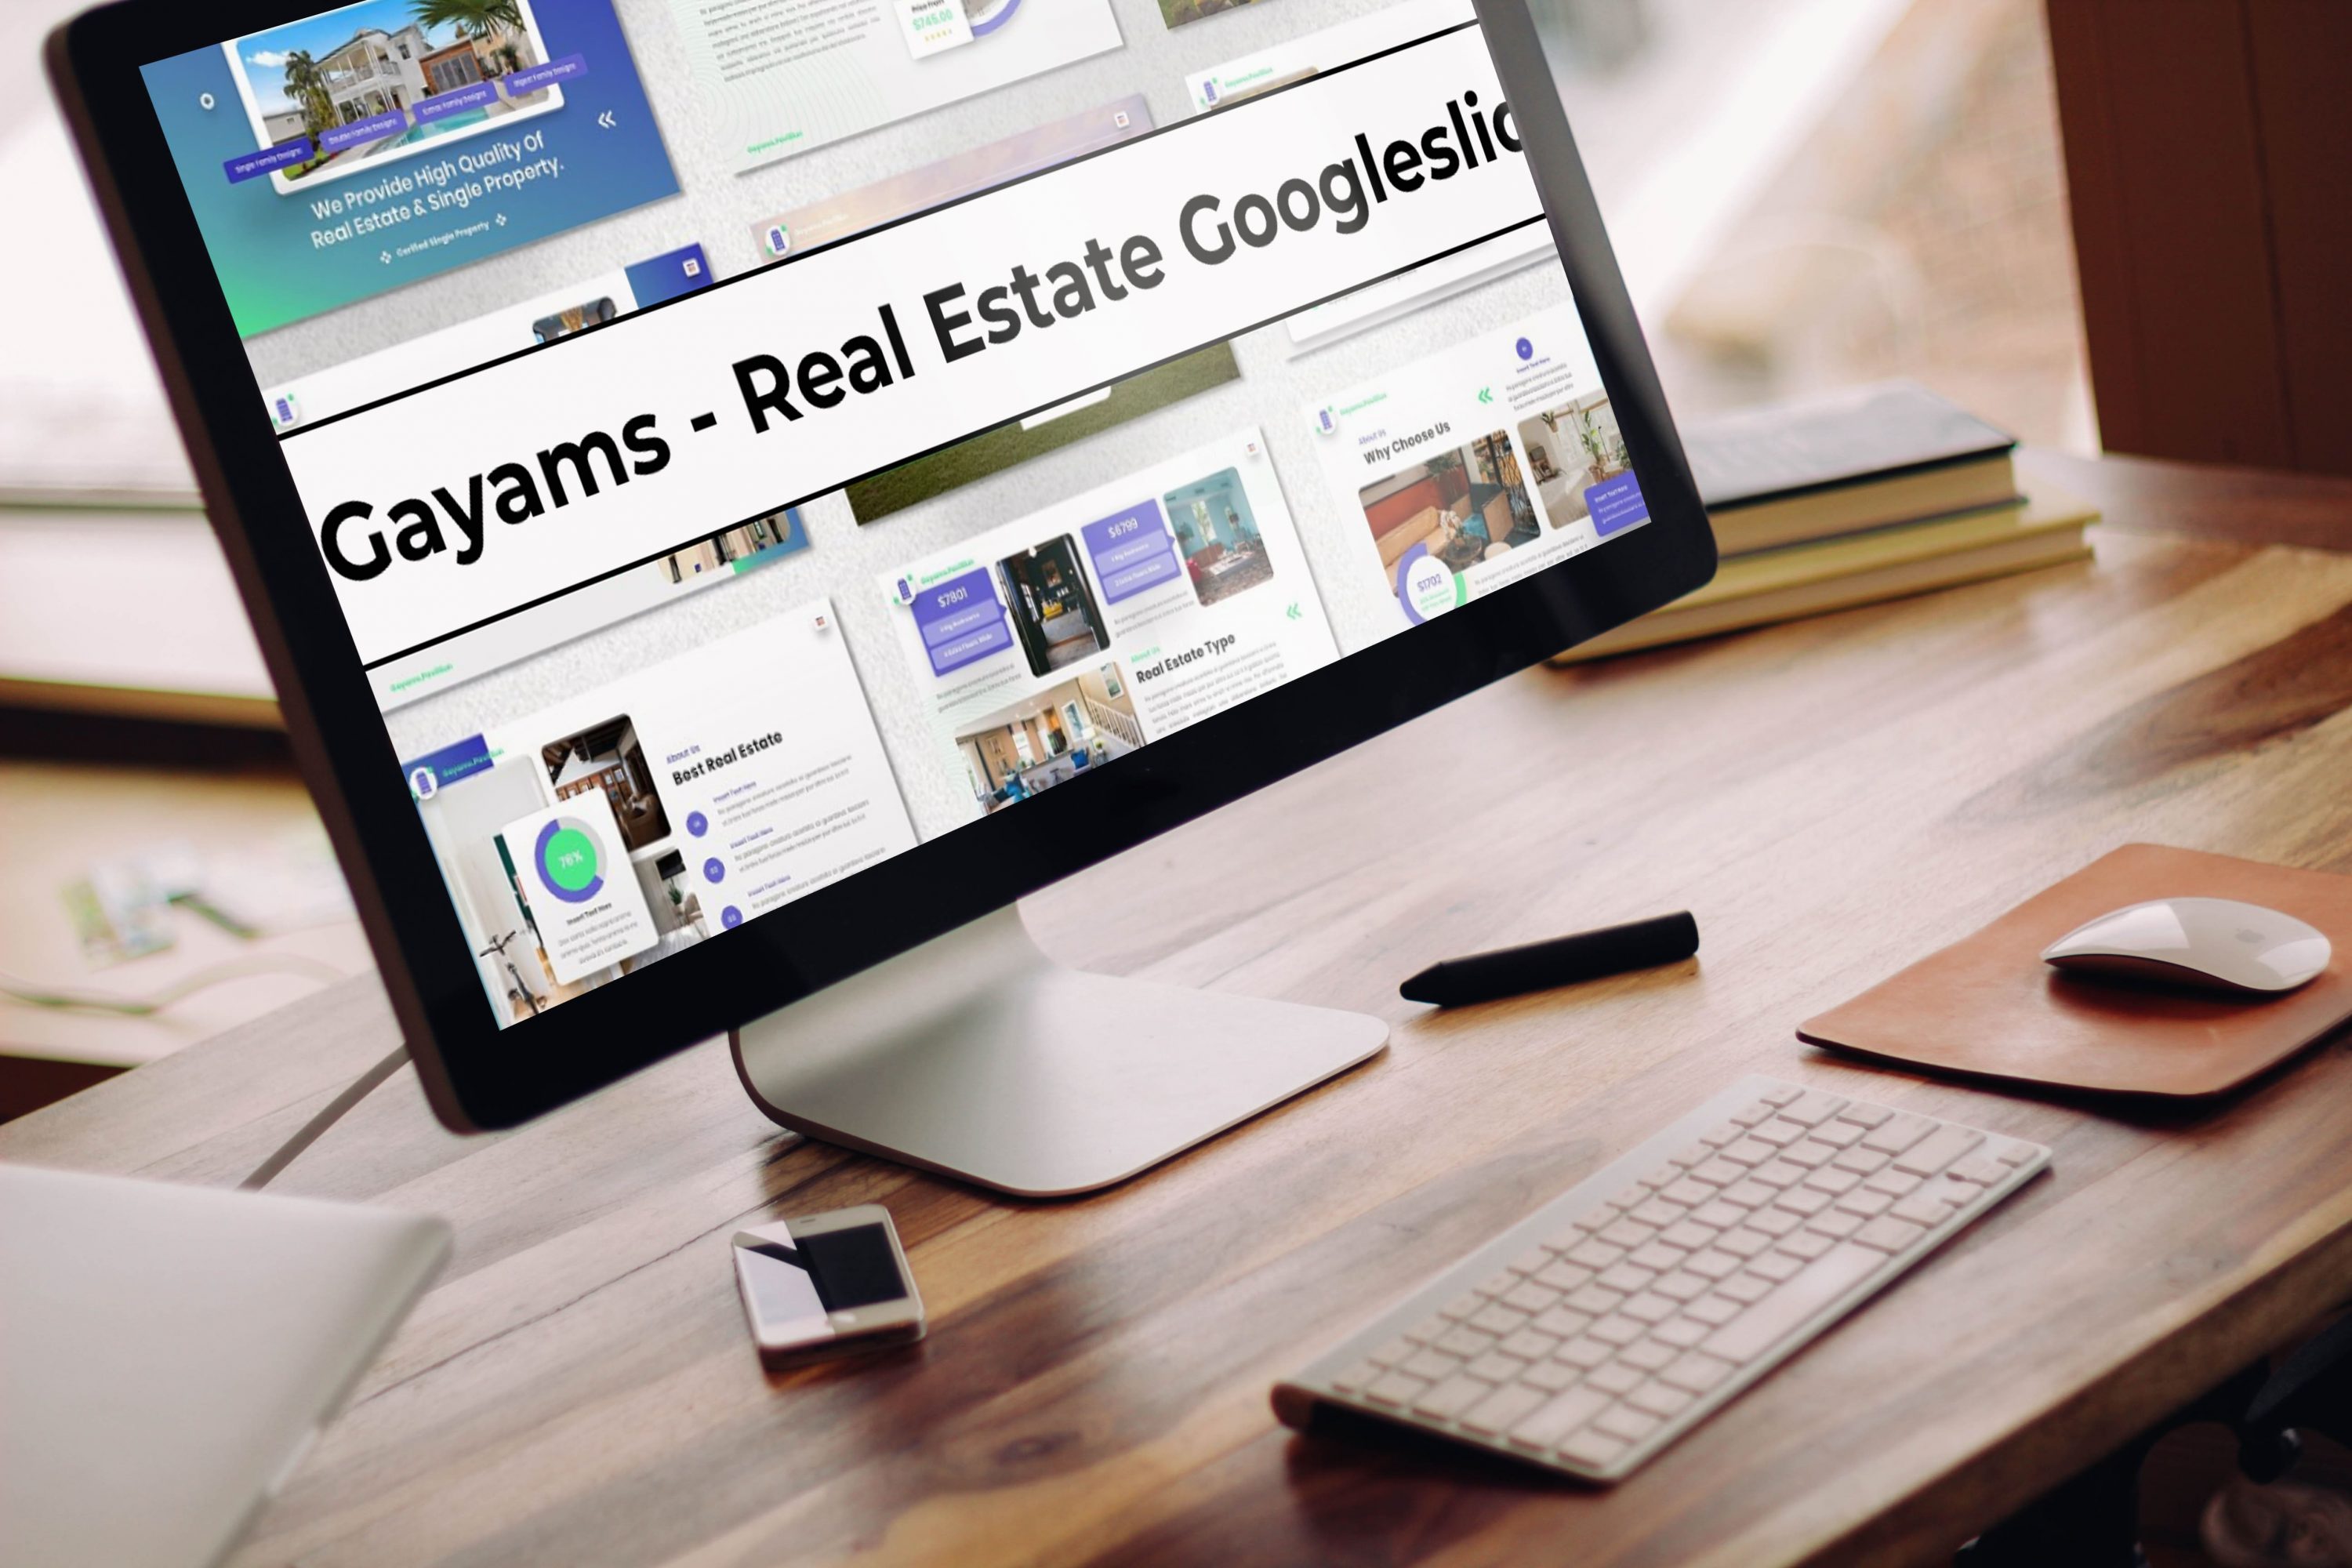 Desktop option of the Gayams - Real Estate Googleslide.